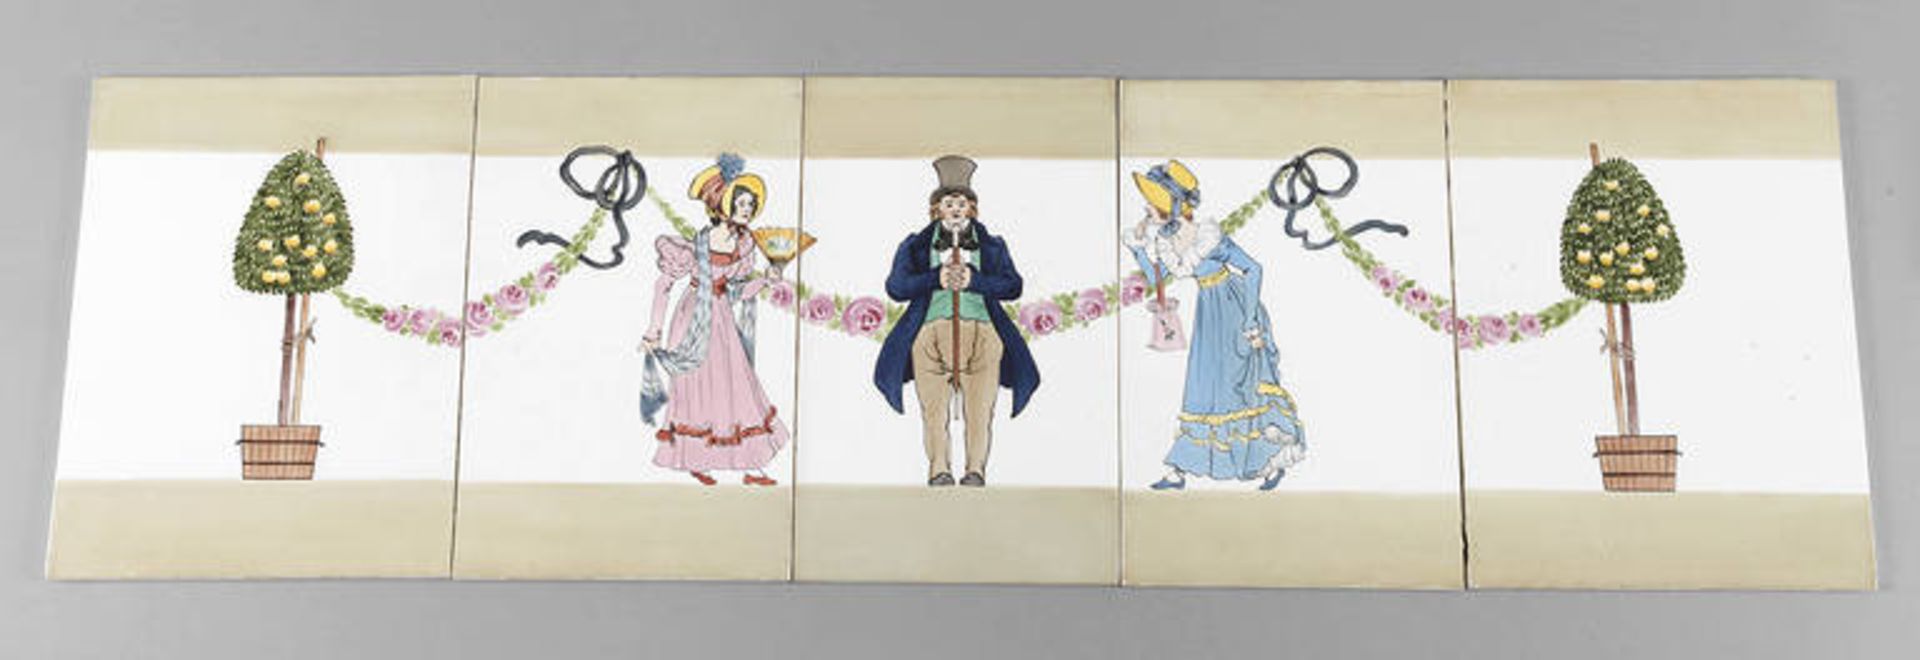 Fliesenfries Jugendstil
ungemarkt, um 1900, in der Art von Franz Ringer gestaltetes Bildmotiv, in